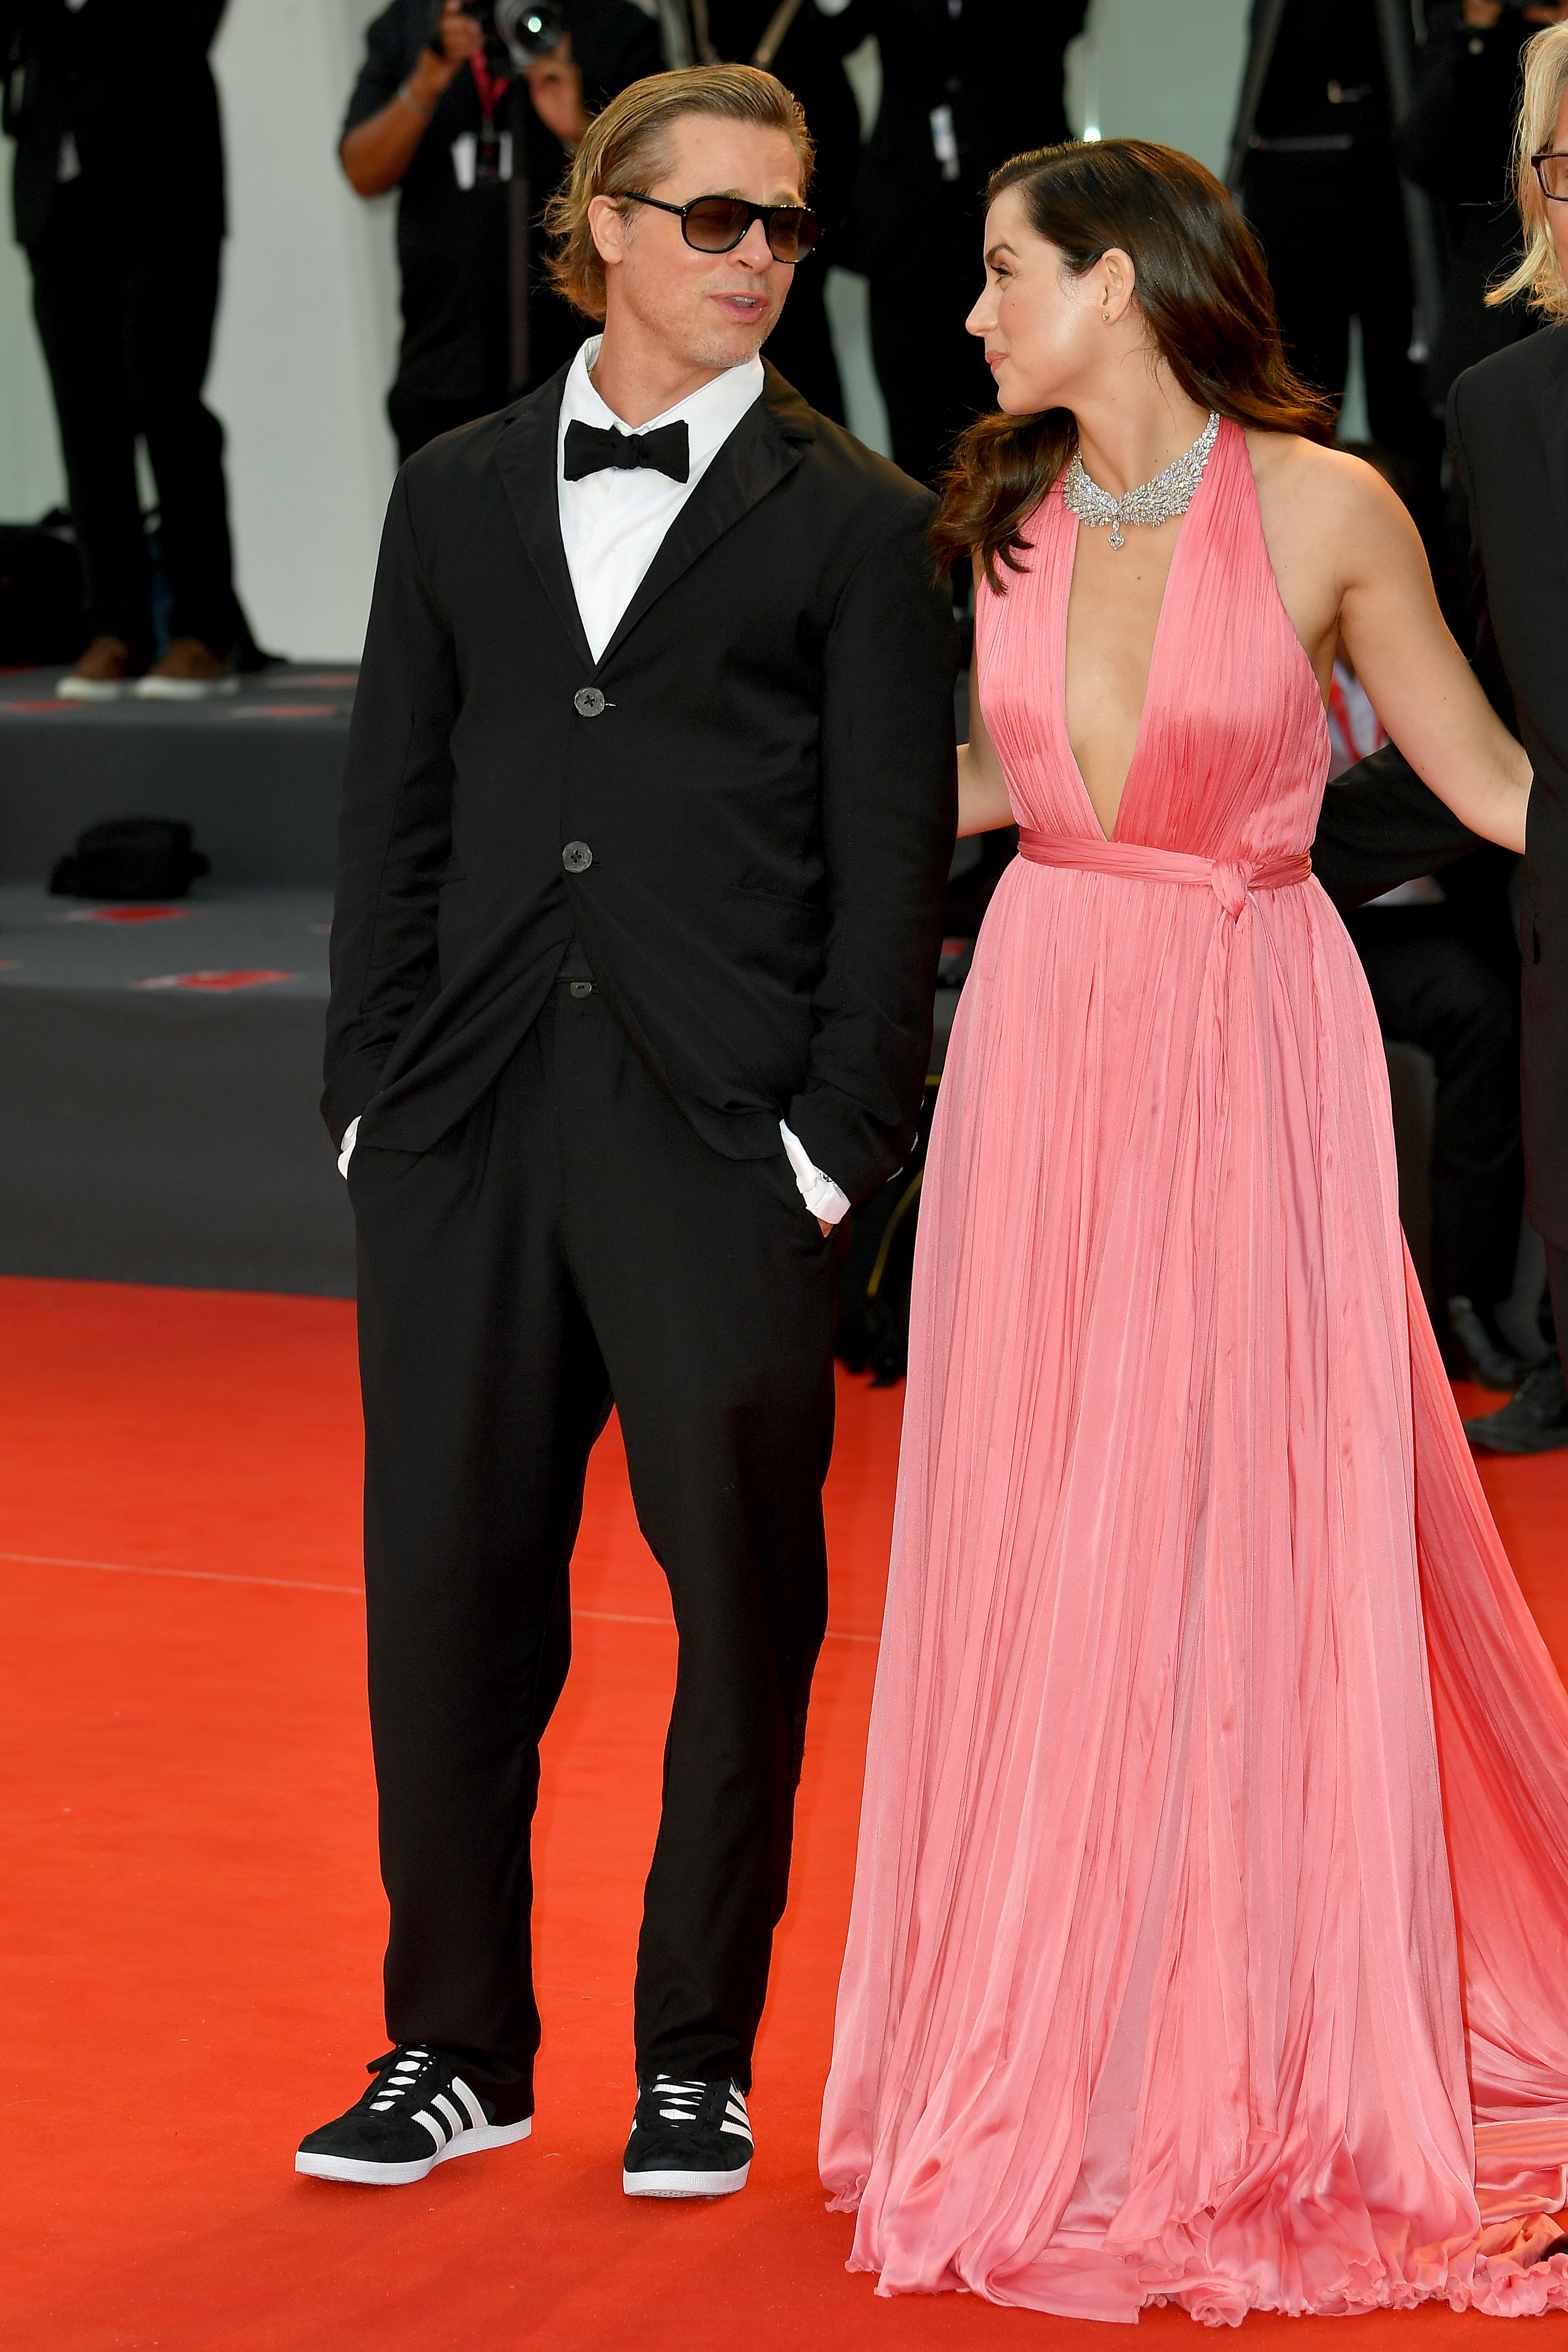 Brad Pitt and Ana de Armas